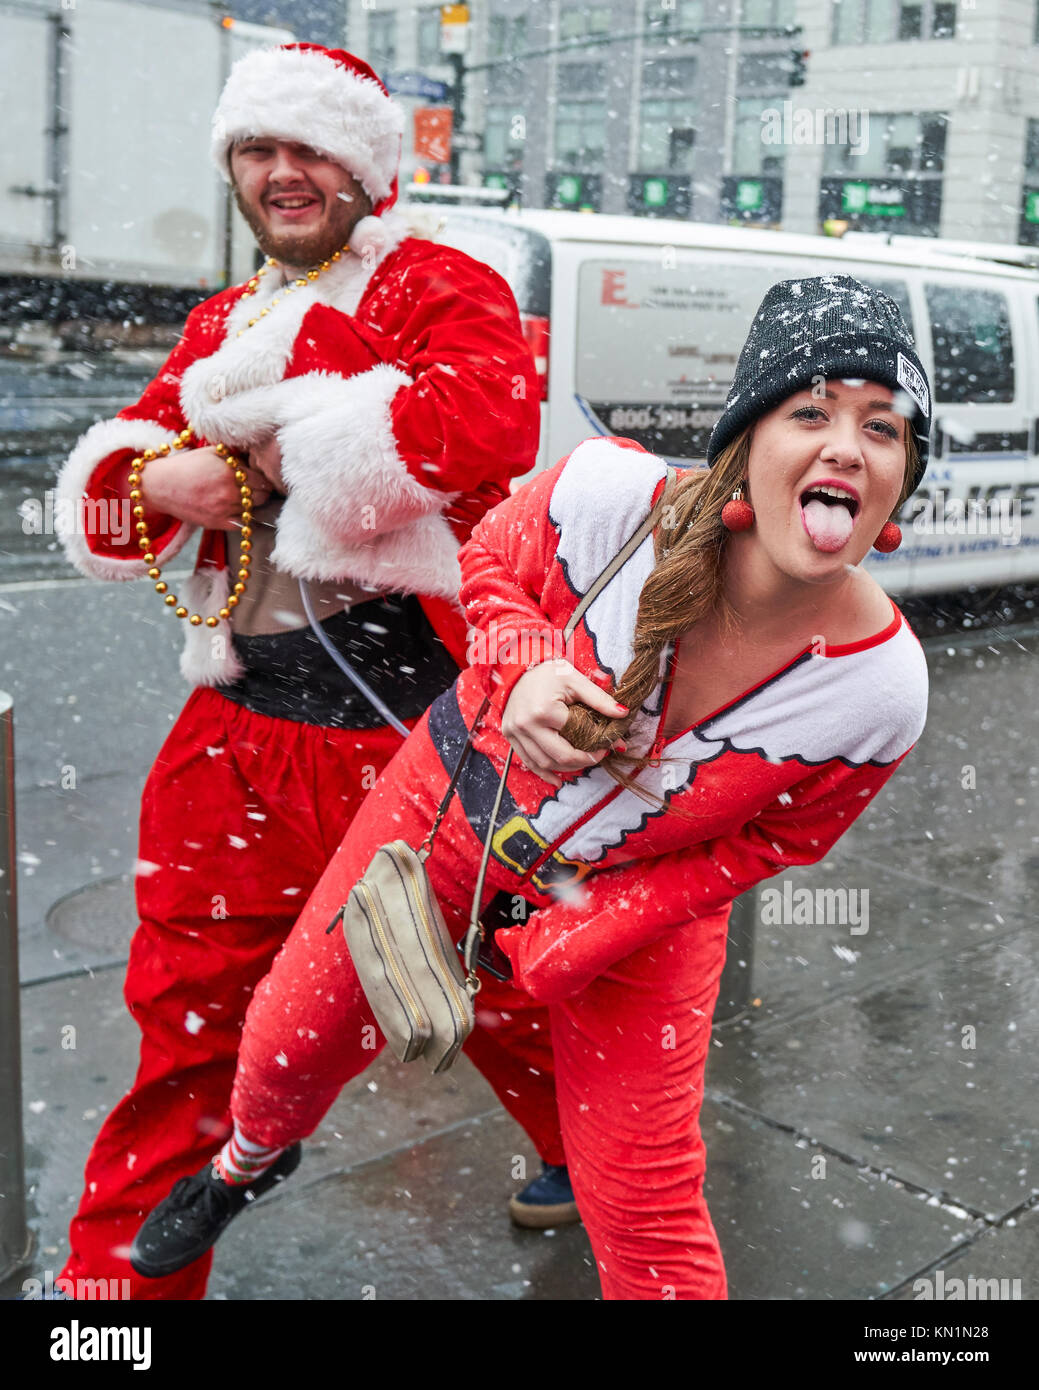 New York, Stati Uniti d'America, 9 Dic 2017. Persone che indossano il Natale-relativi costumi hanno divertimento sotto una tempesta di neve in una festosa 'Santacon' folla raccolta. Foto di Enrique Shore/Alamy Live News Foto Stock